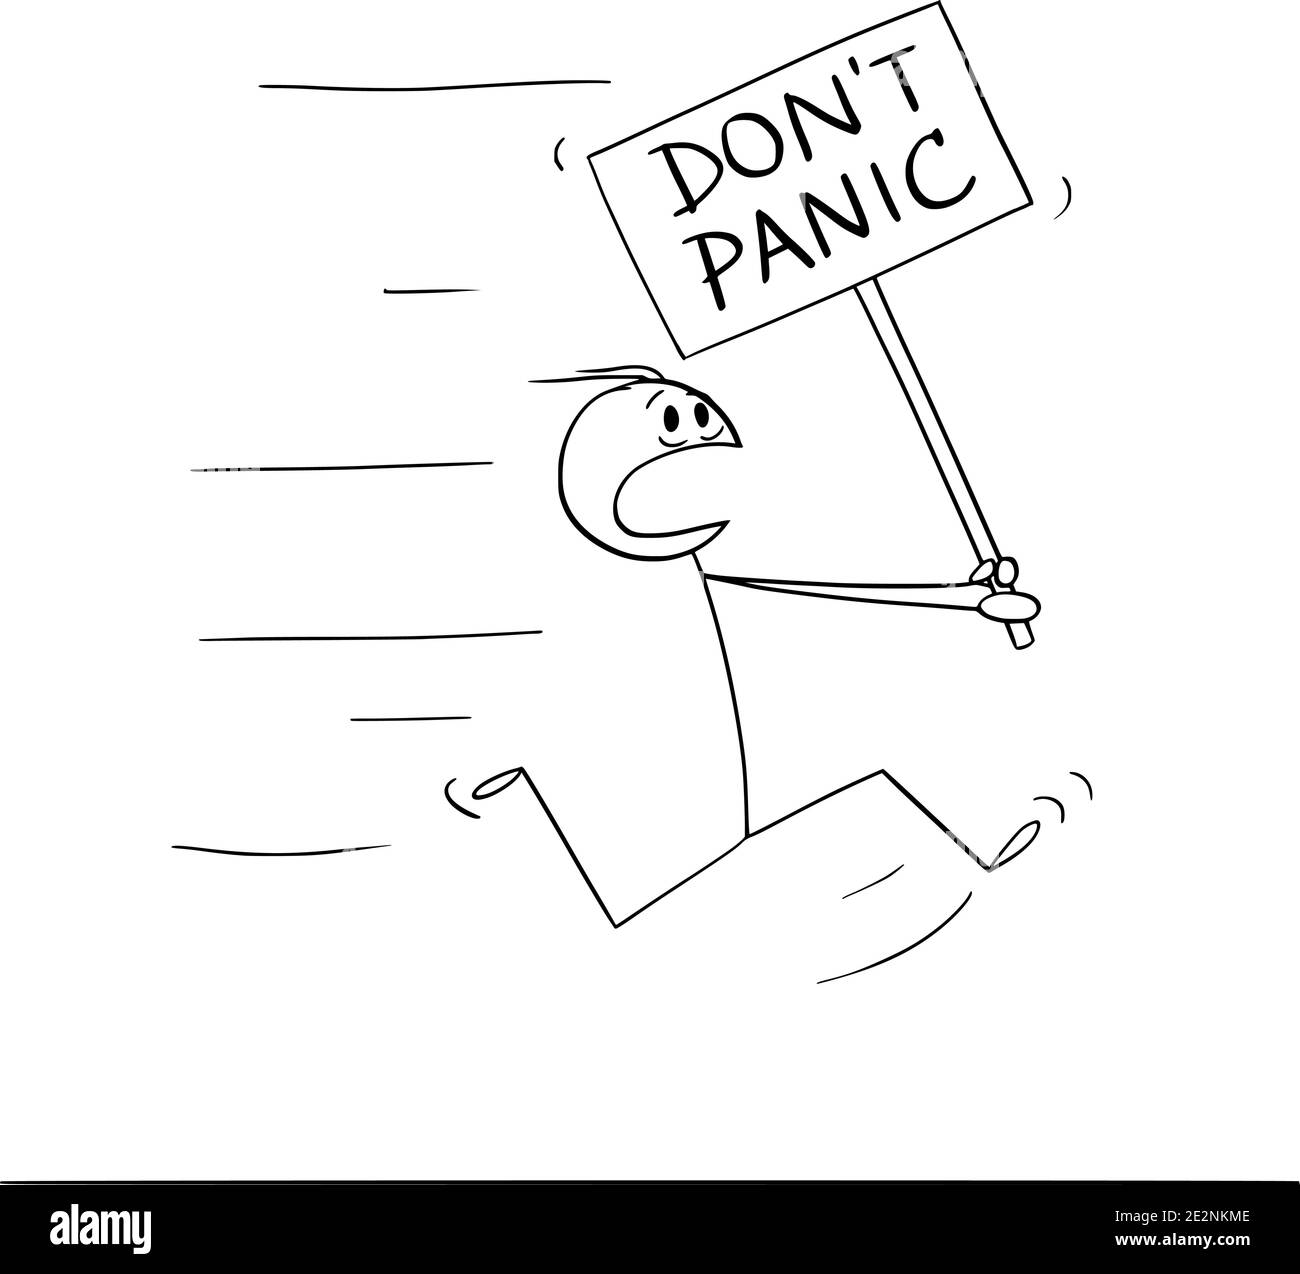 Vektor Cartoon Stick Figur Illustration des Mannes läuft in Angst und hält nicht Panik Zeichen. Stock Vektor